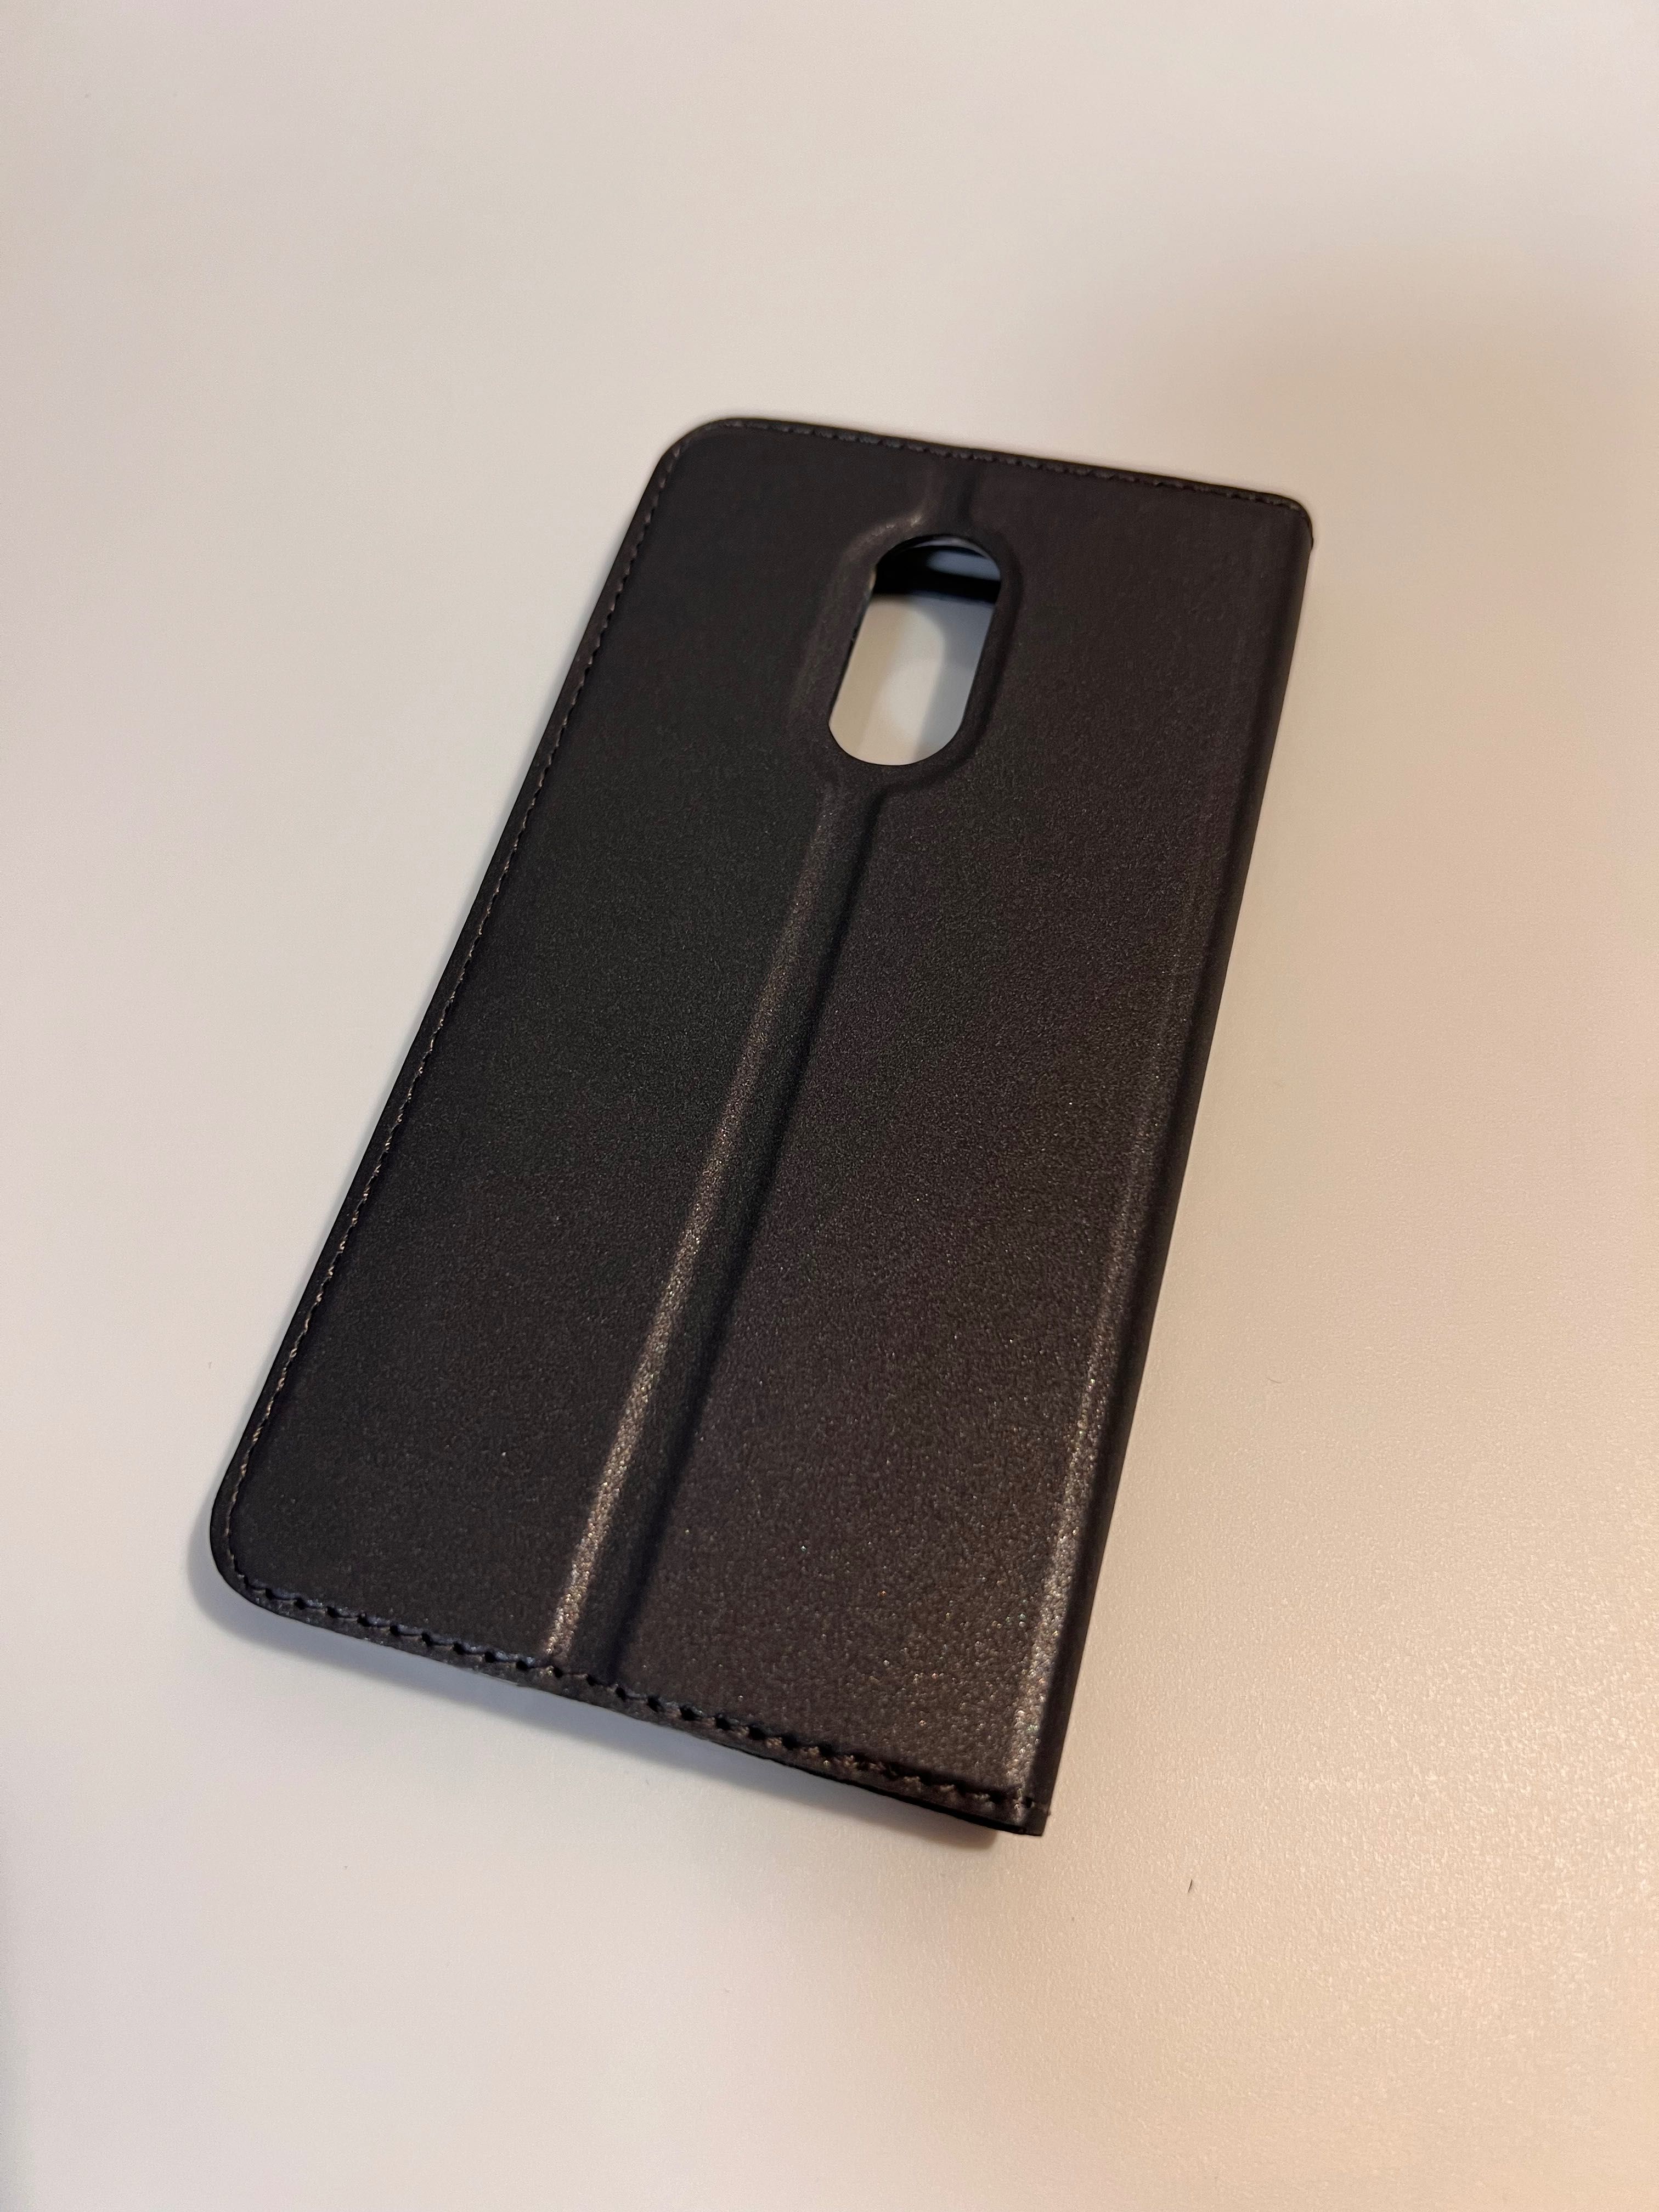 Szare etui/obudowa/case z klapką na telefon Xiaomi Redmi Note 4